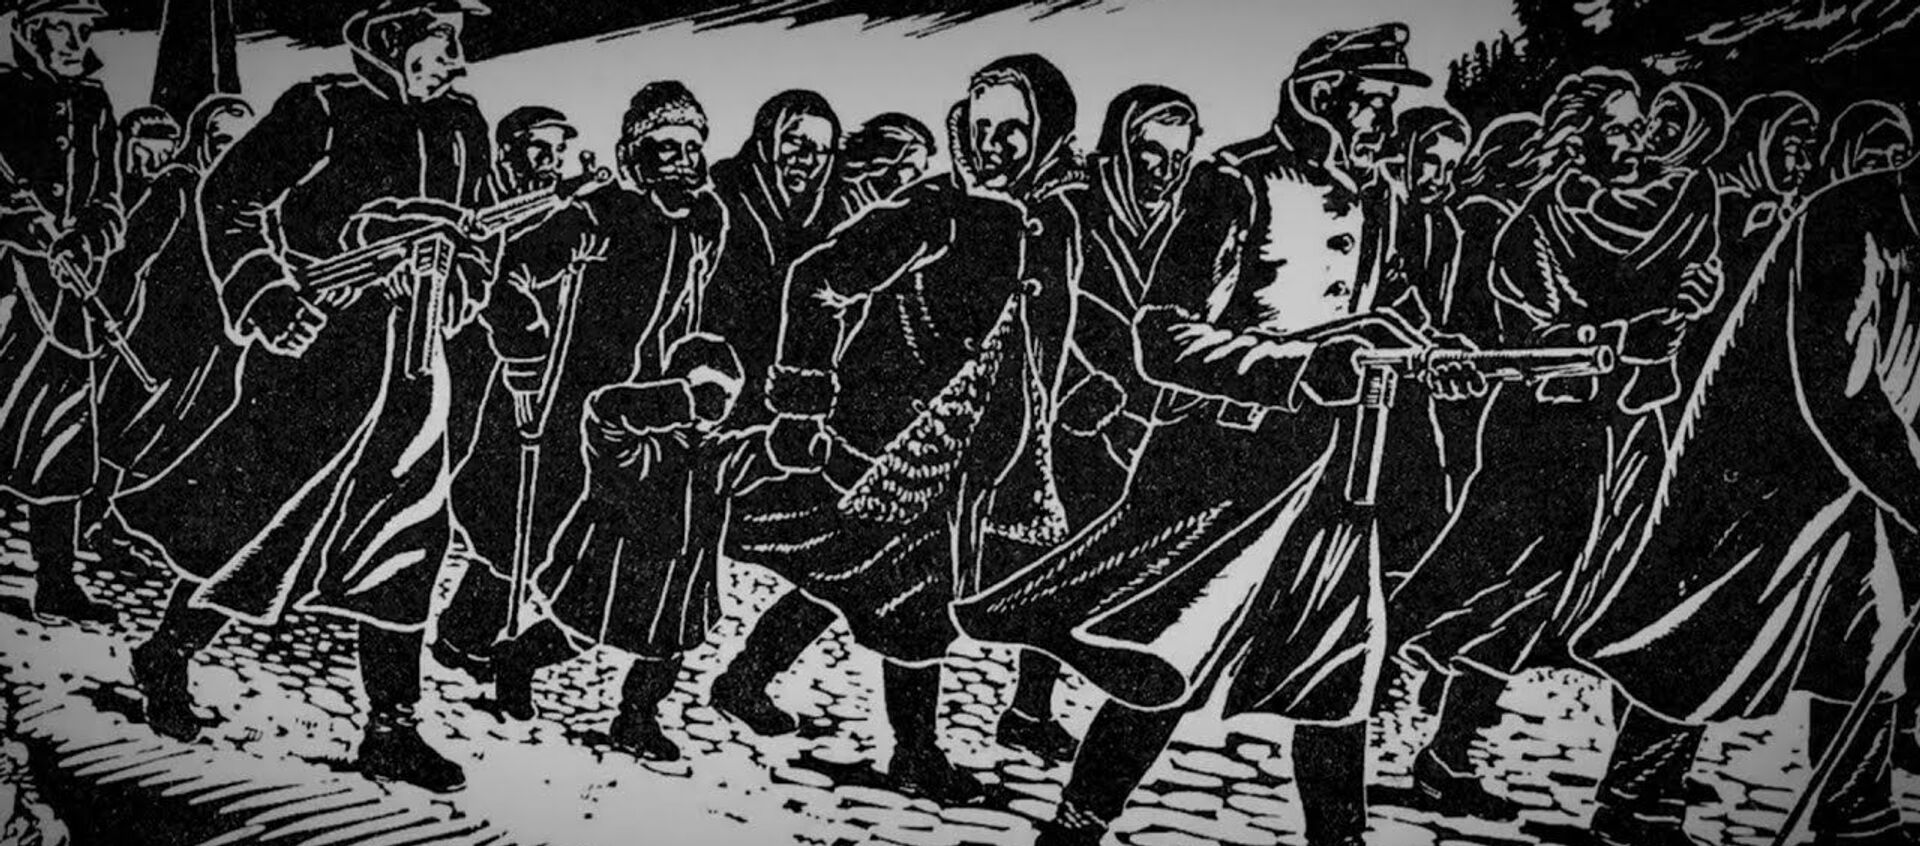 Там вся земля в этих трупах: узница Саласпилса поделилась страшными воспоминаниями - Sputnik Латвия, 1920, 02.10.2020